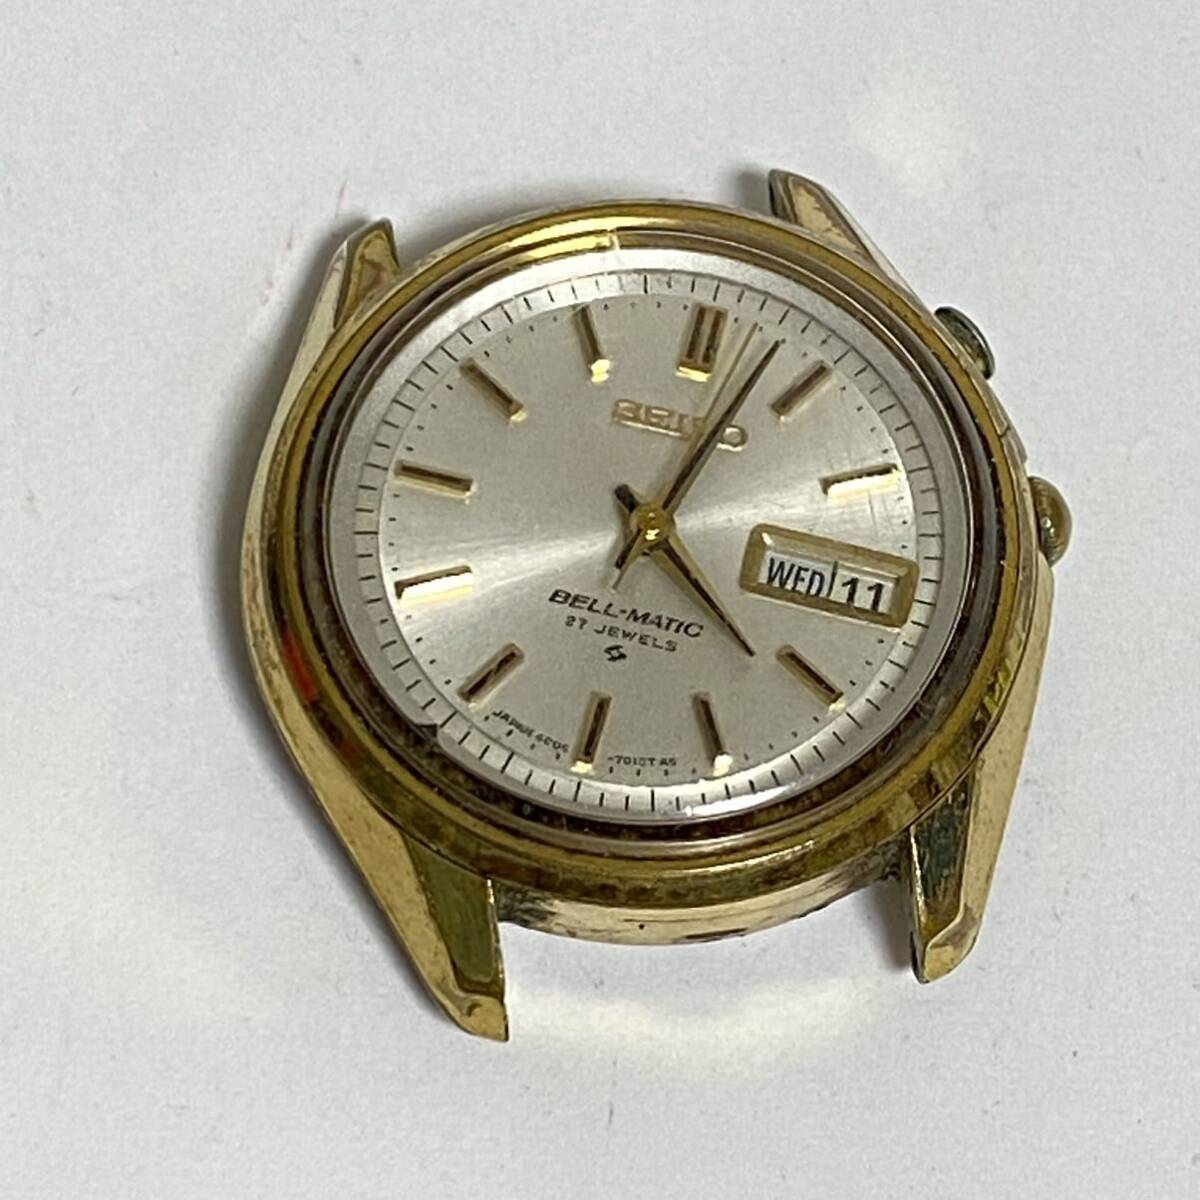  SEIKO セイコー BELL-MATIC ベルマチック 4006-7010 自動巻き デイデイト 腕時計の画像1